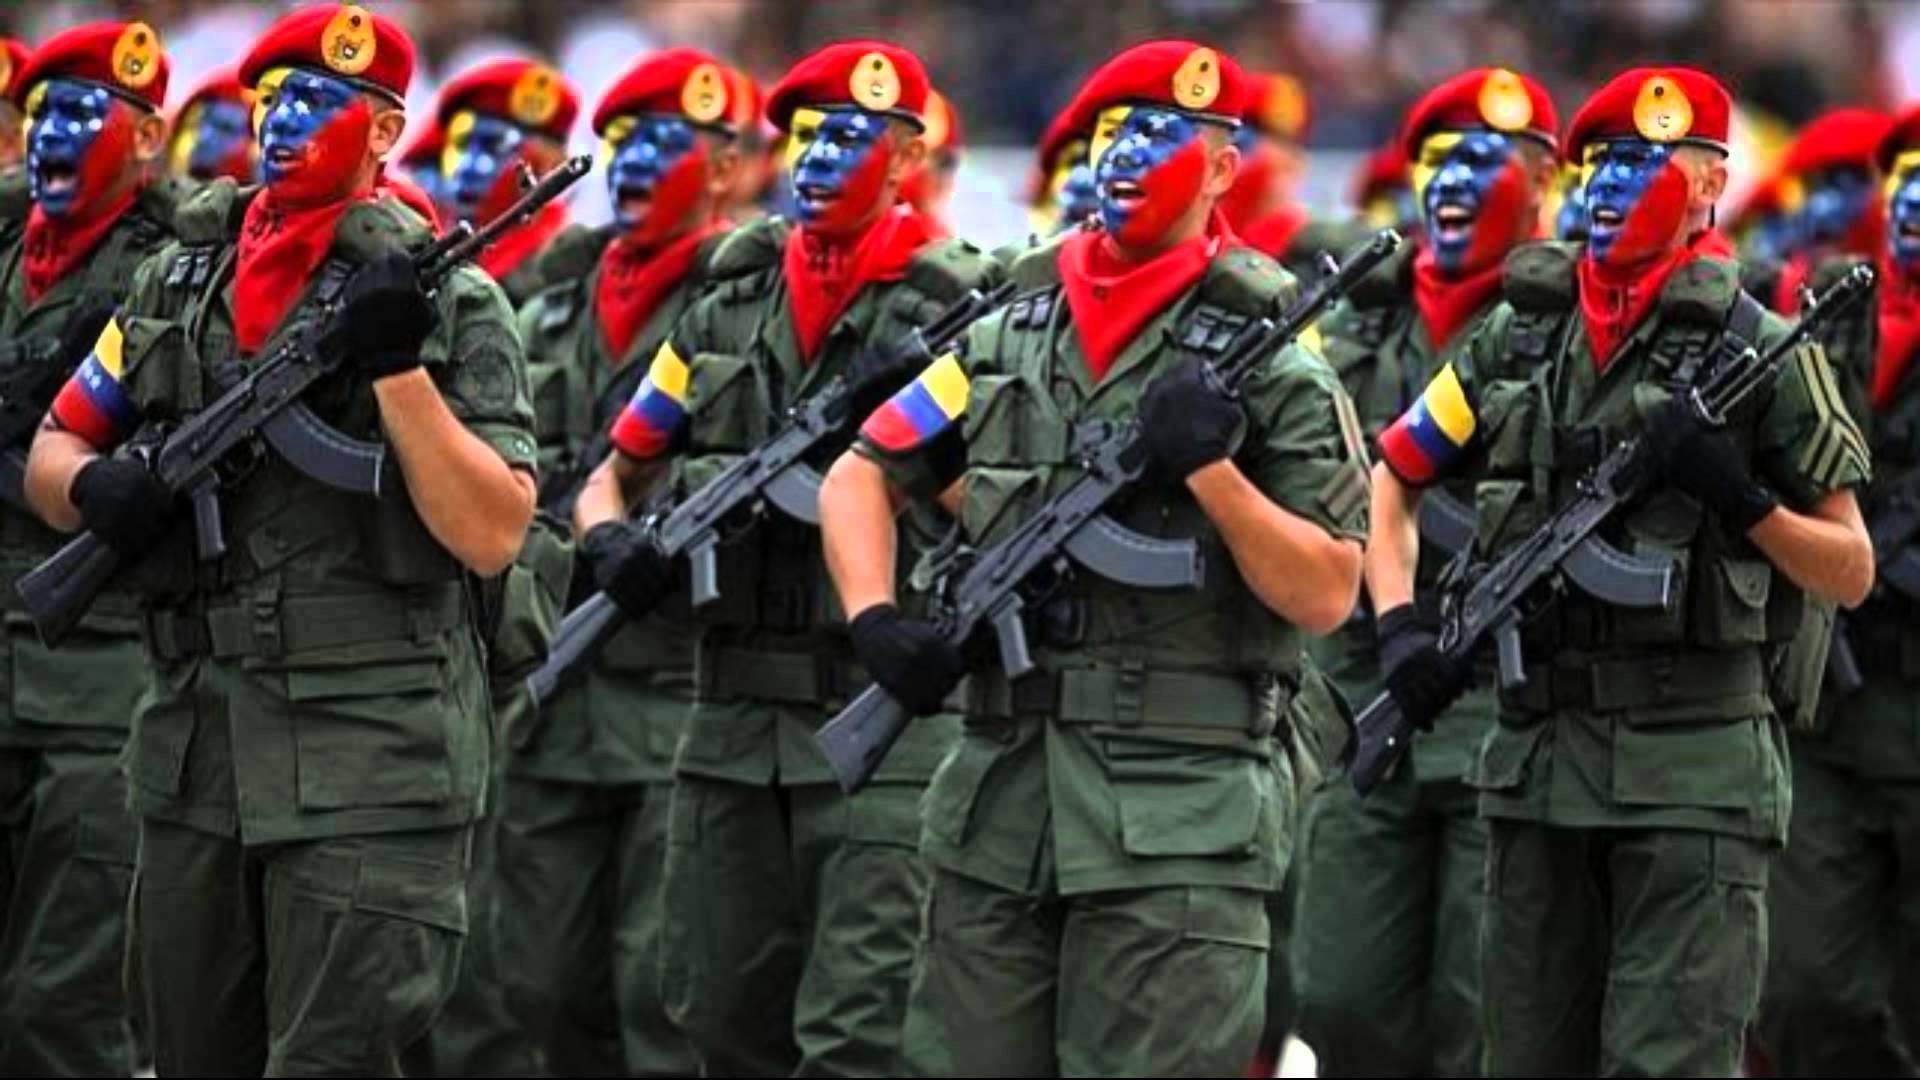 El diputado opositor y ex presidente de la Asamblea Nacional (AN), Julio Borges, informó que más de 200 militares venezolanos fueron apresados por "rebelión".